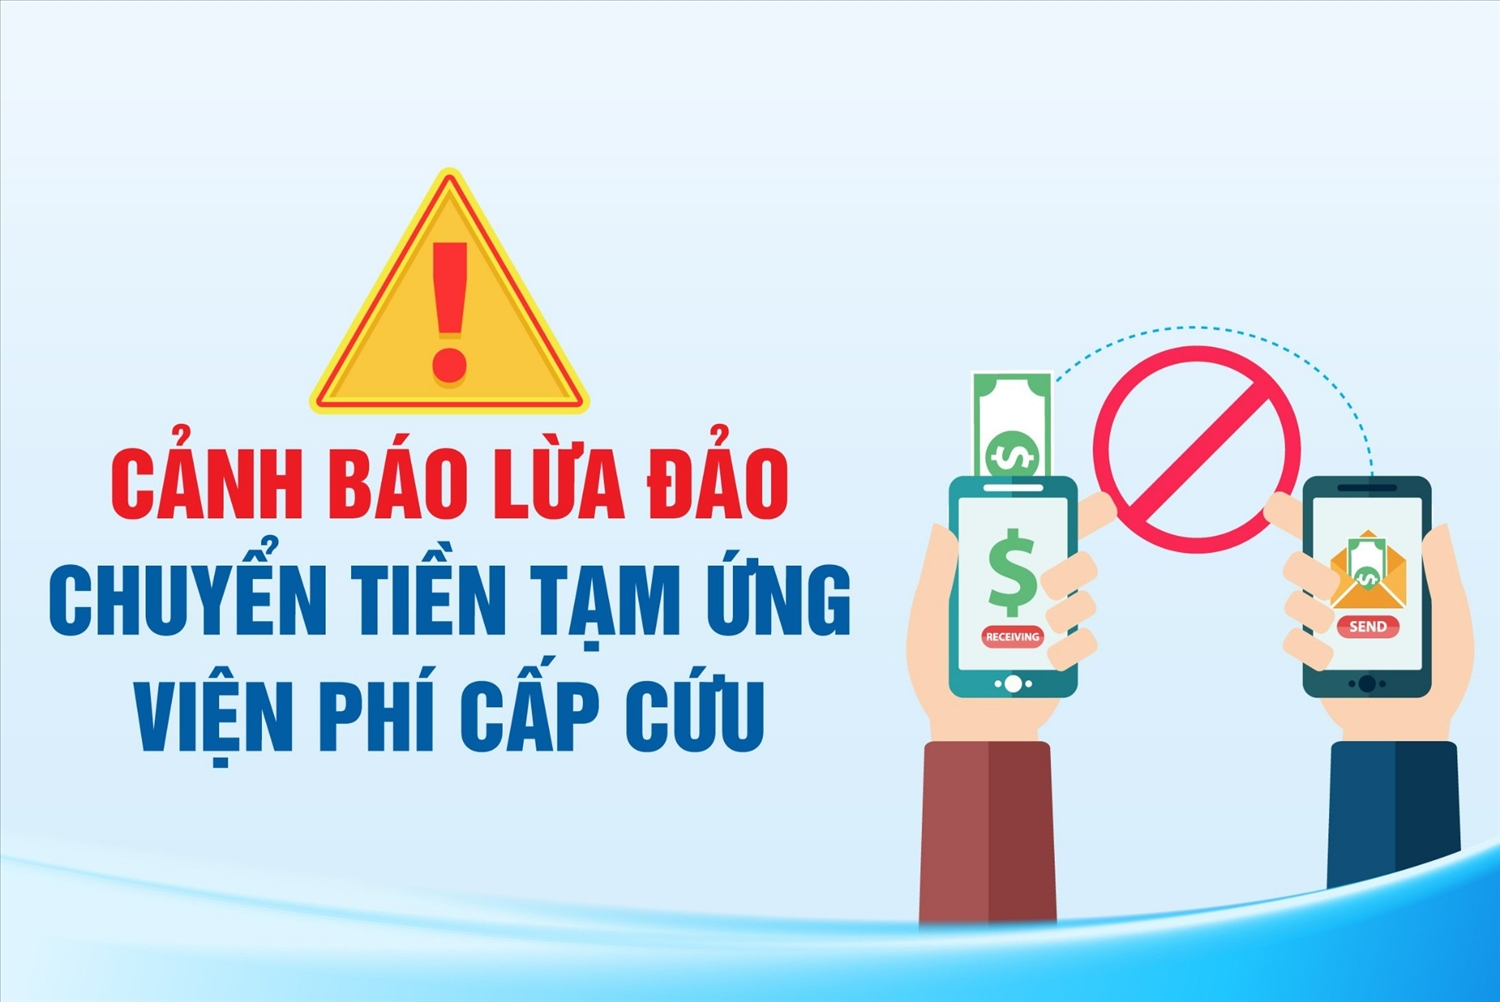 TP Hồ Chí Minh: Người dân cần cảnh giác trước các thủ đoạn lừa đảo liên quan đến sức khoẻ, y tế.